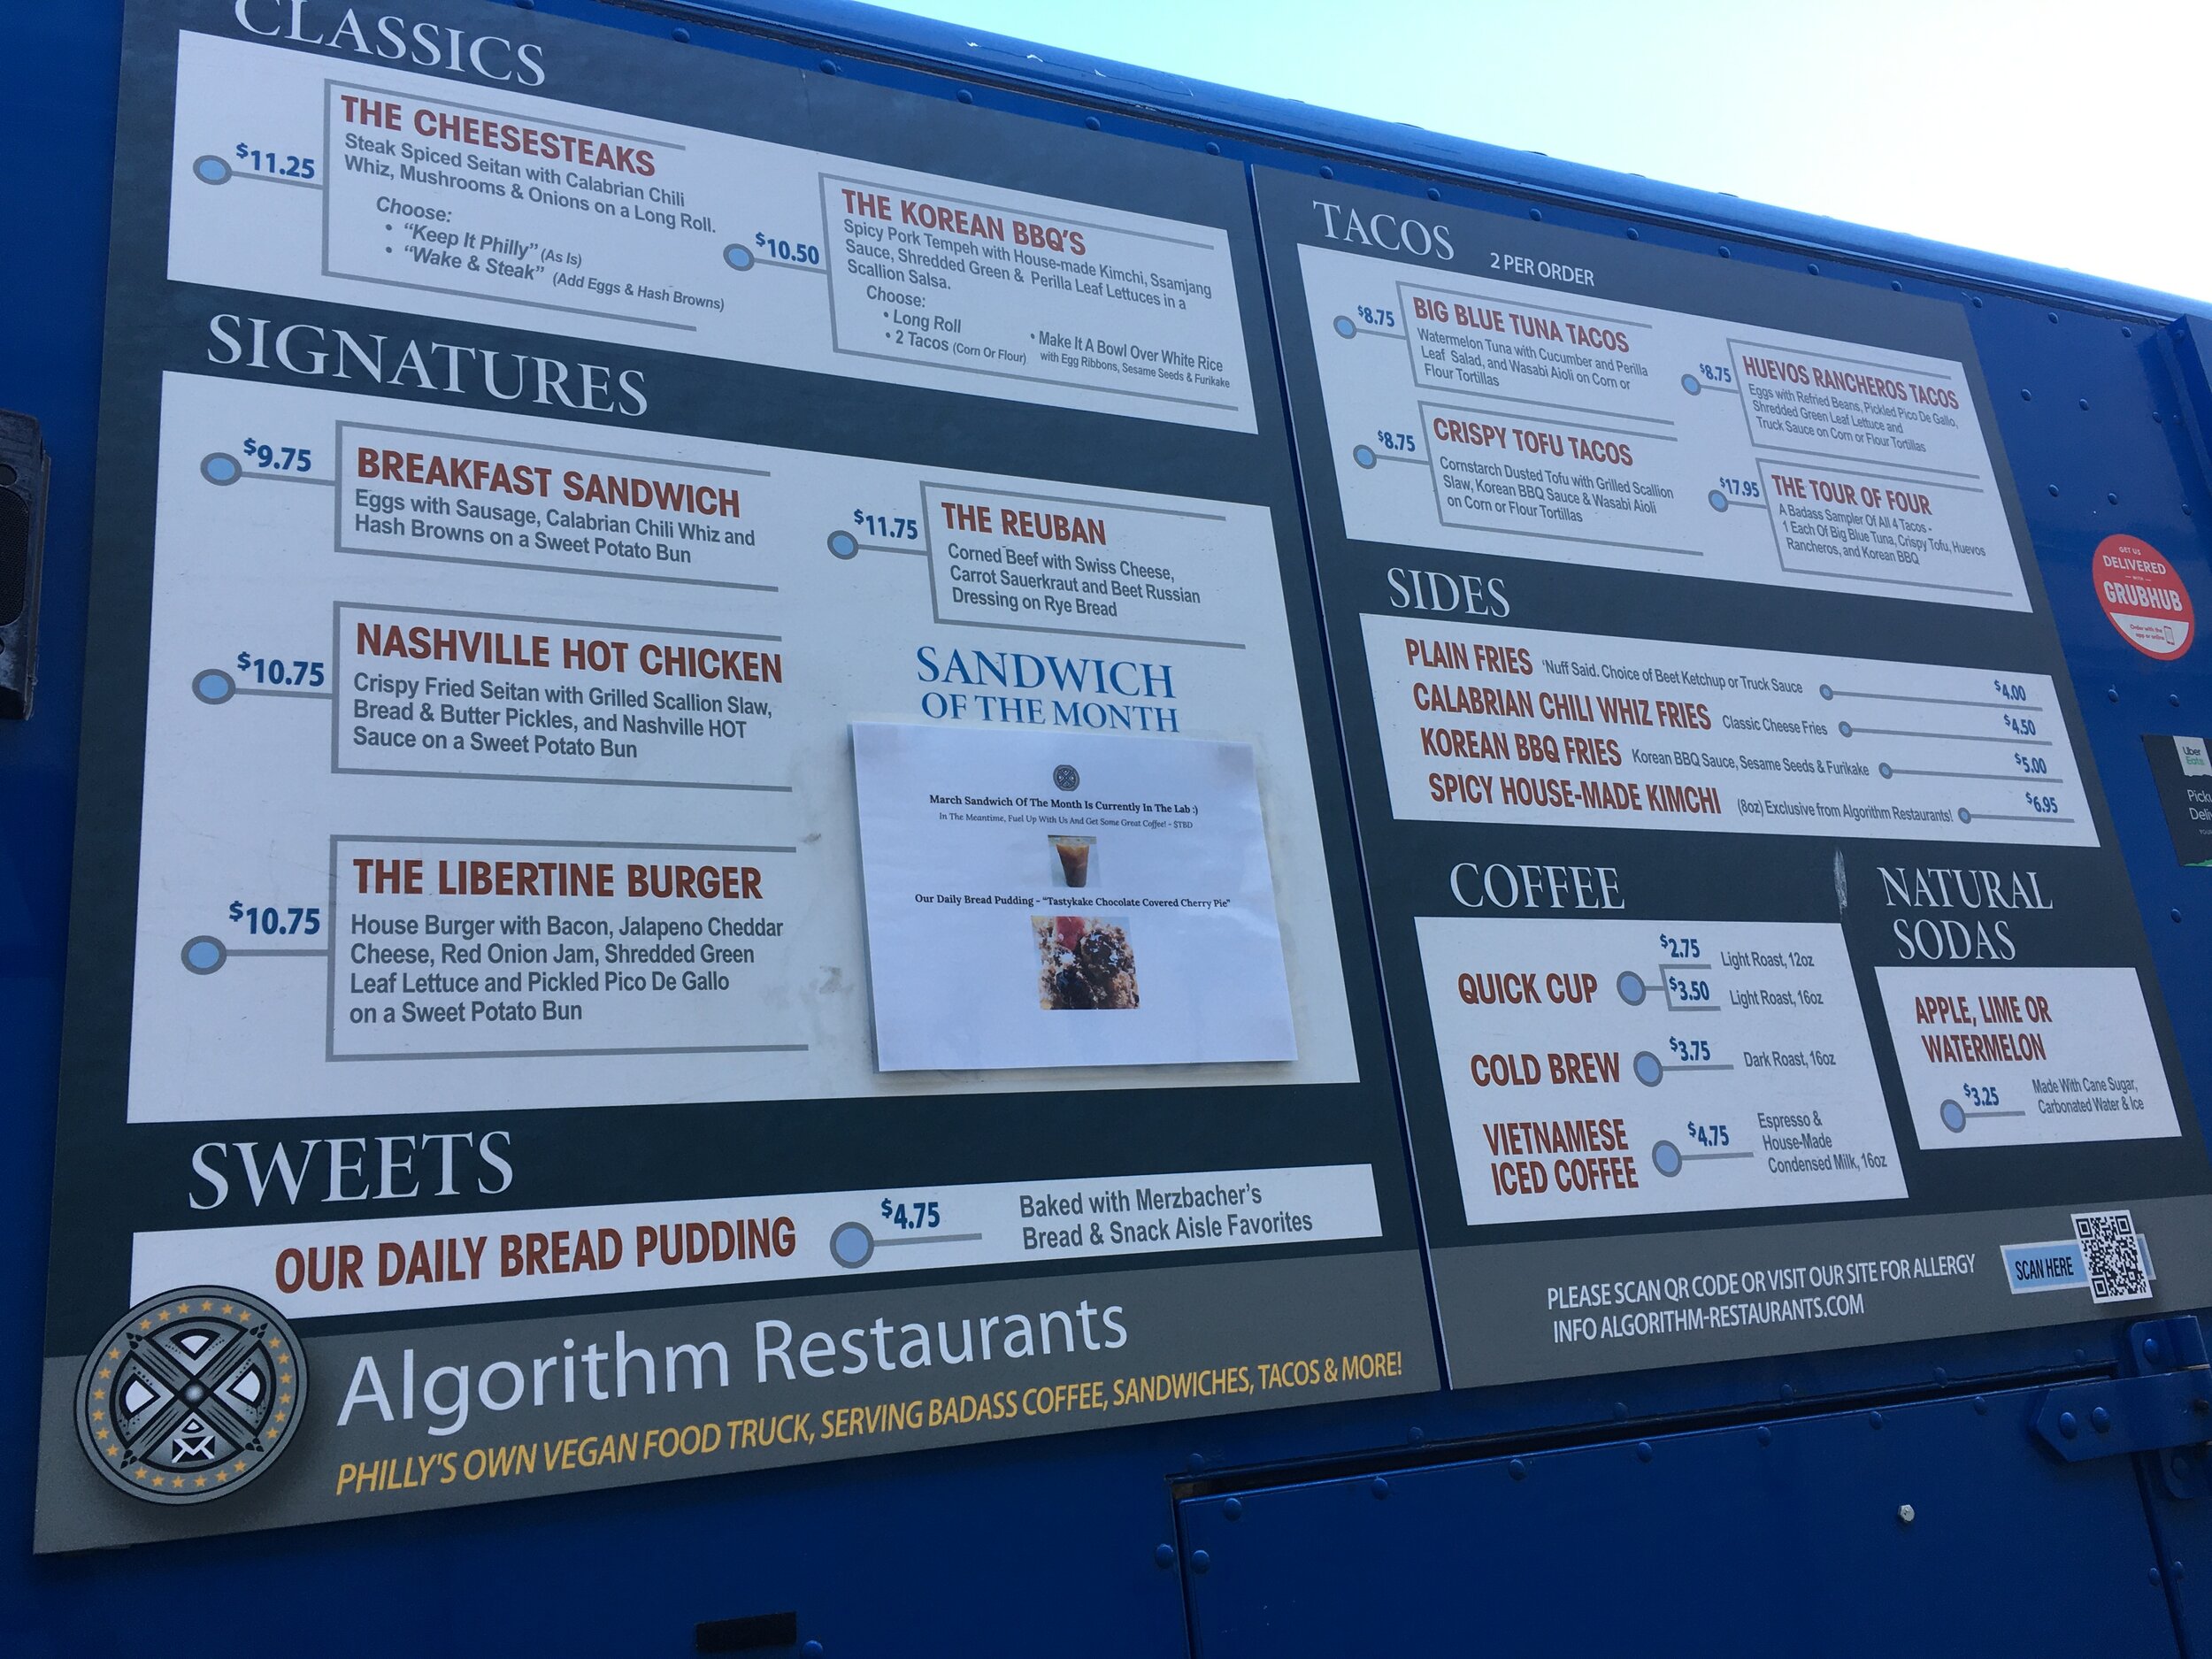 Algorithm’s menu. Photograph by Patrick Kerr.